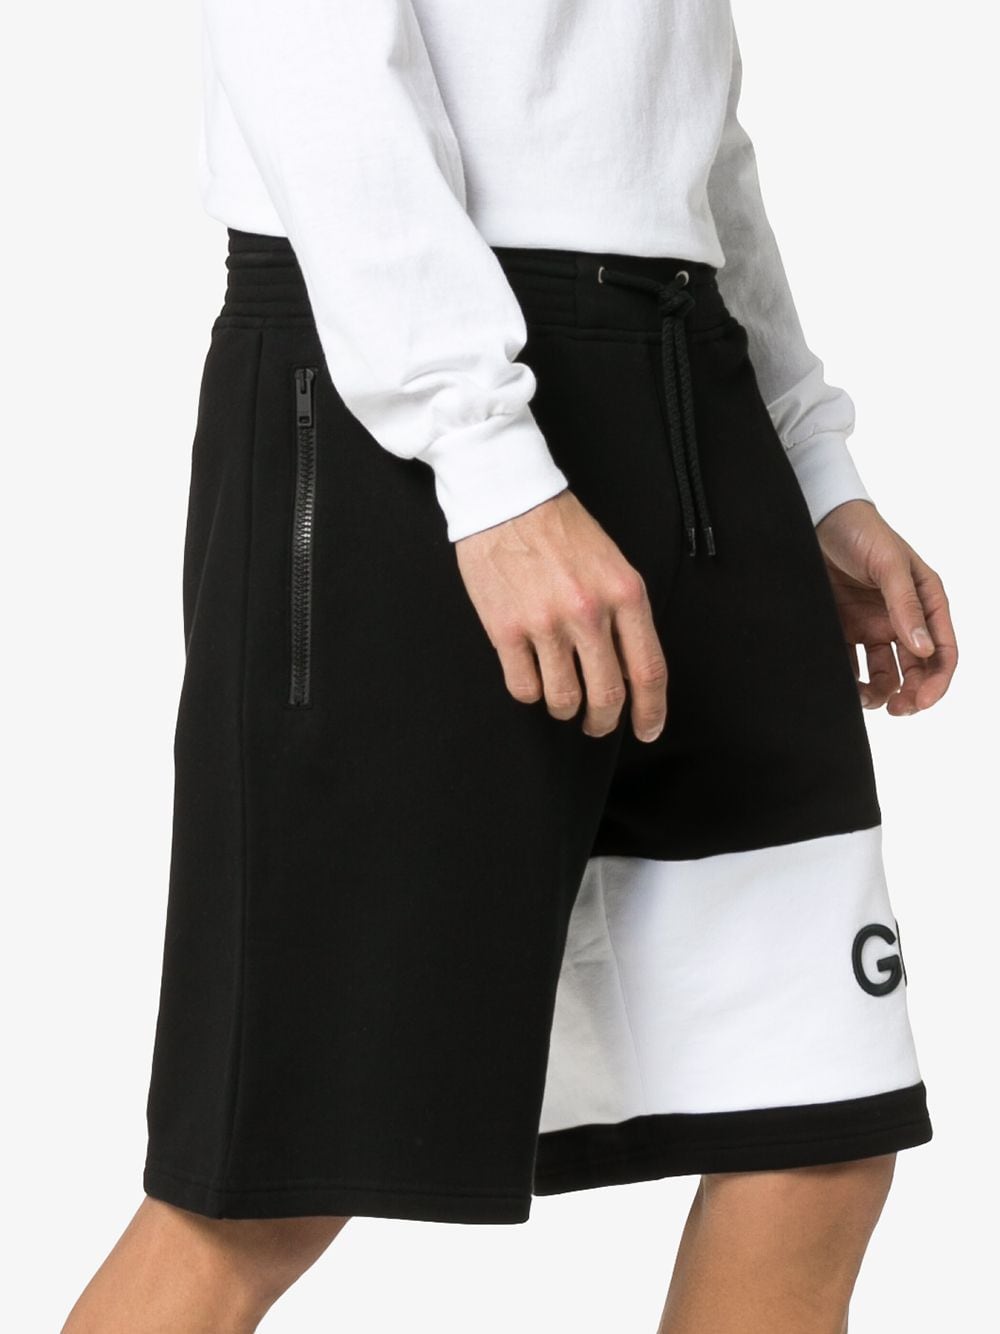 фото Givenchy спортивные шорты в стиле оверсайз с логотипом